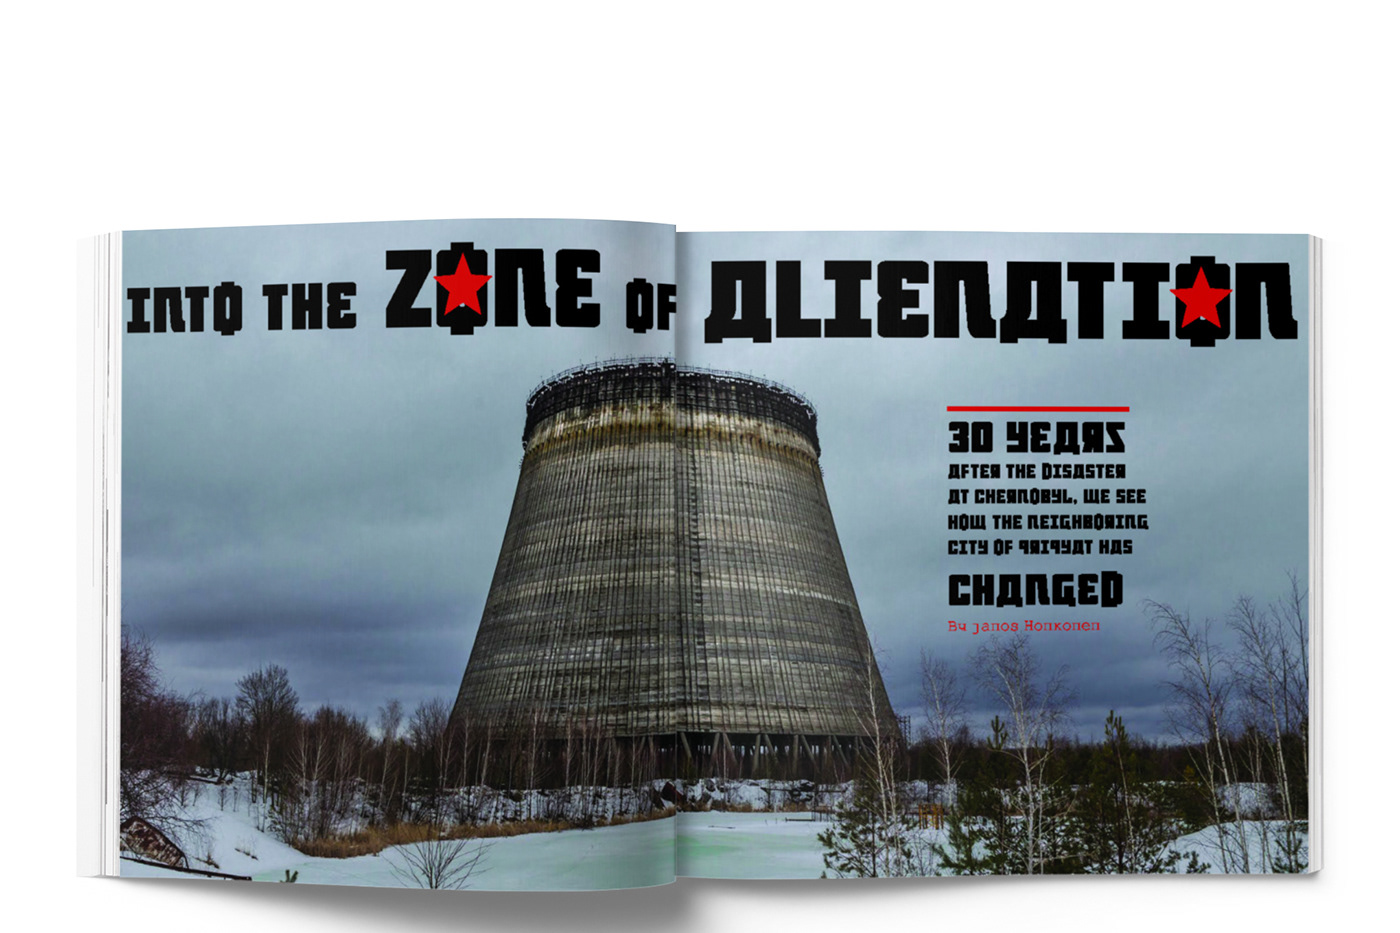 magazine urban exploration pripyat chernobyl underground